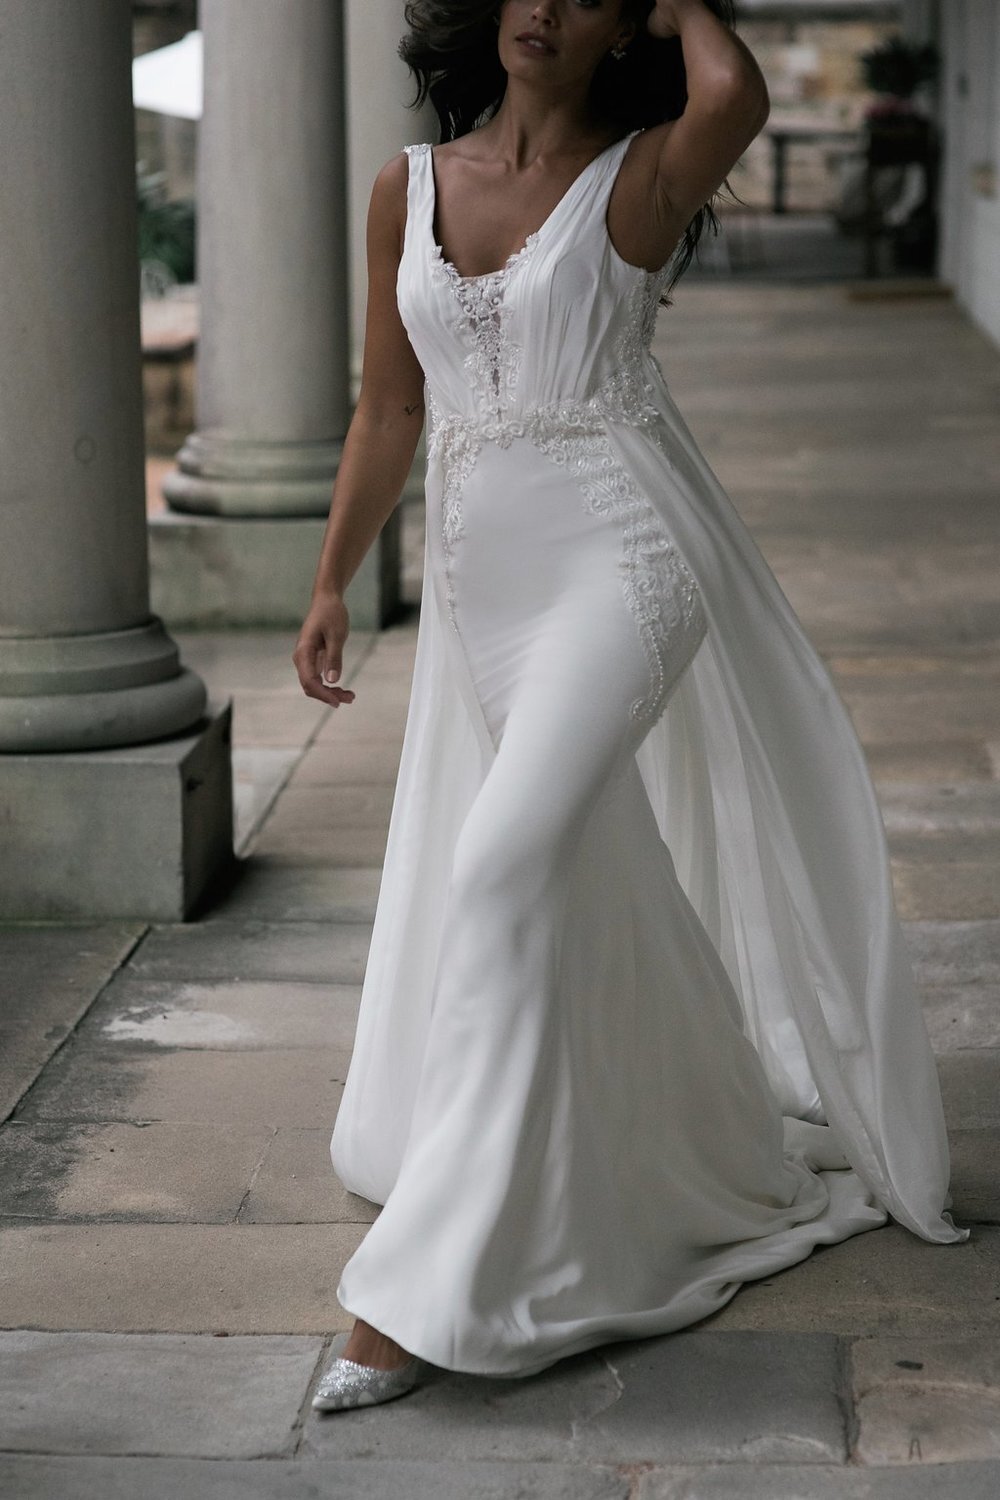 Aisling+front+moira+hughes+sydney+wedding+dresses+designer (1).jpg